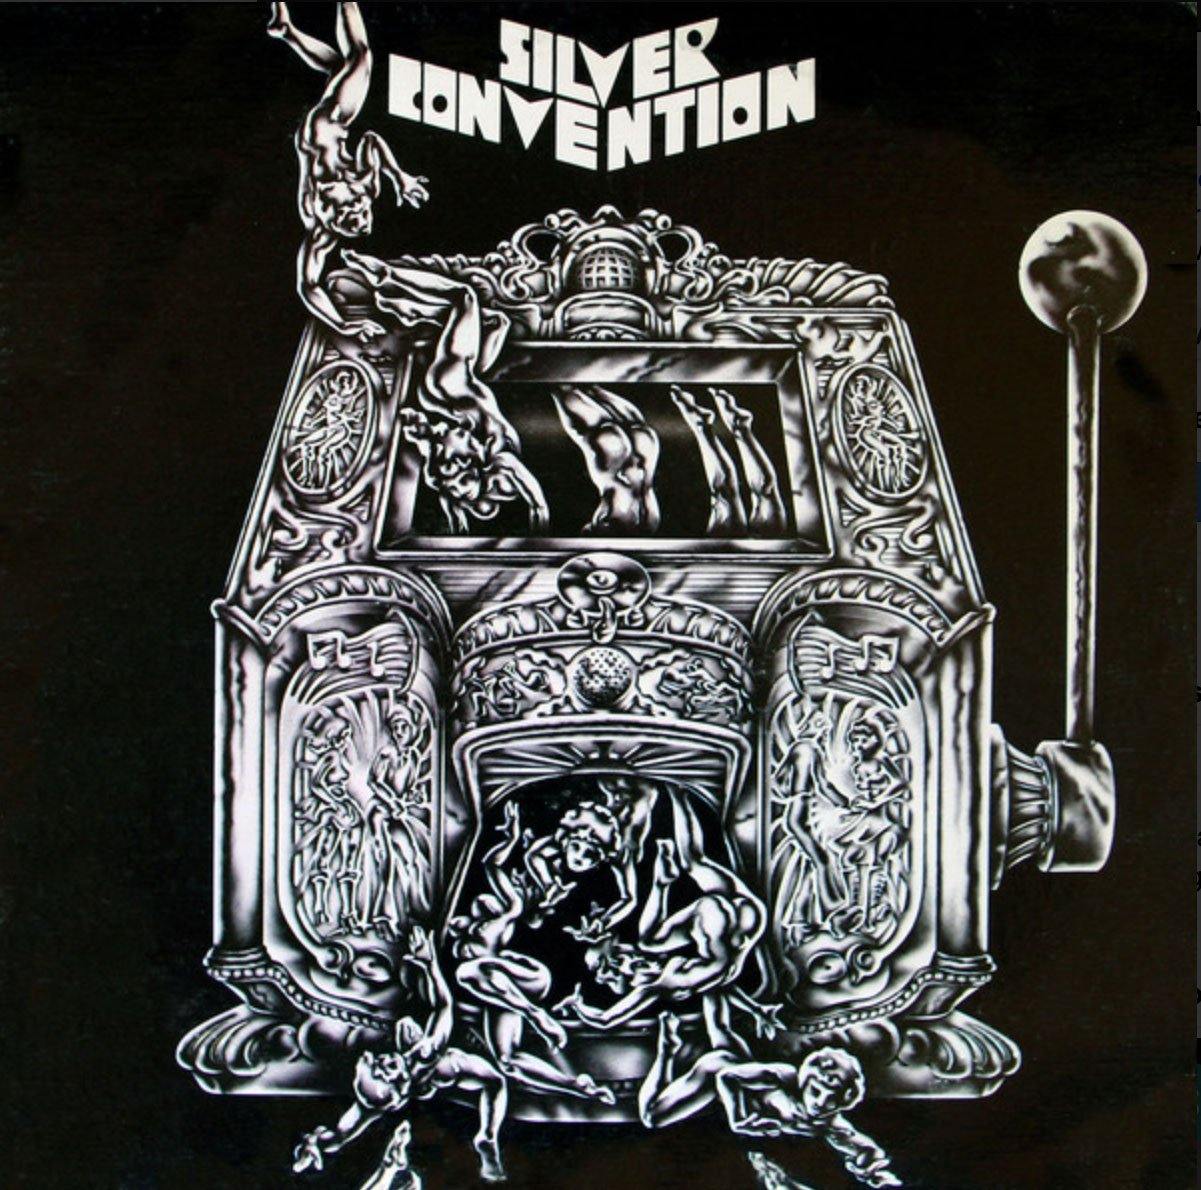 SILVER CONVENTION ‎– Silver Convention - US Pressing - VinylPursuit.com